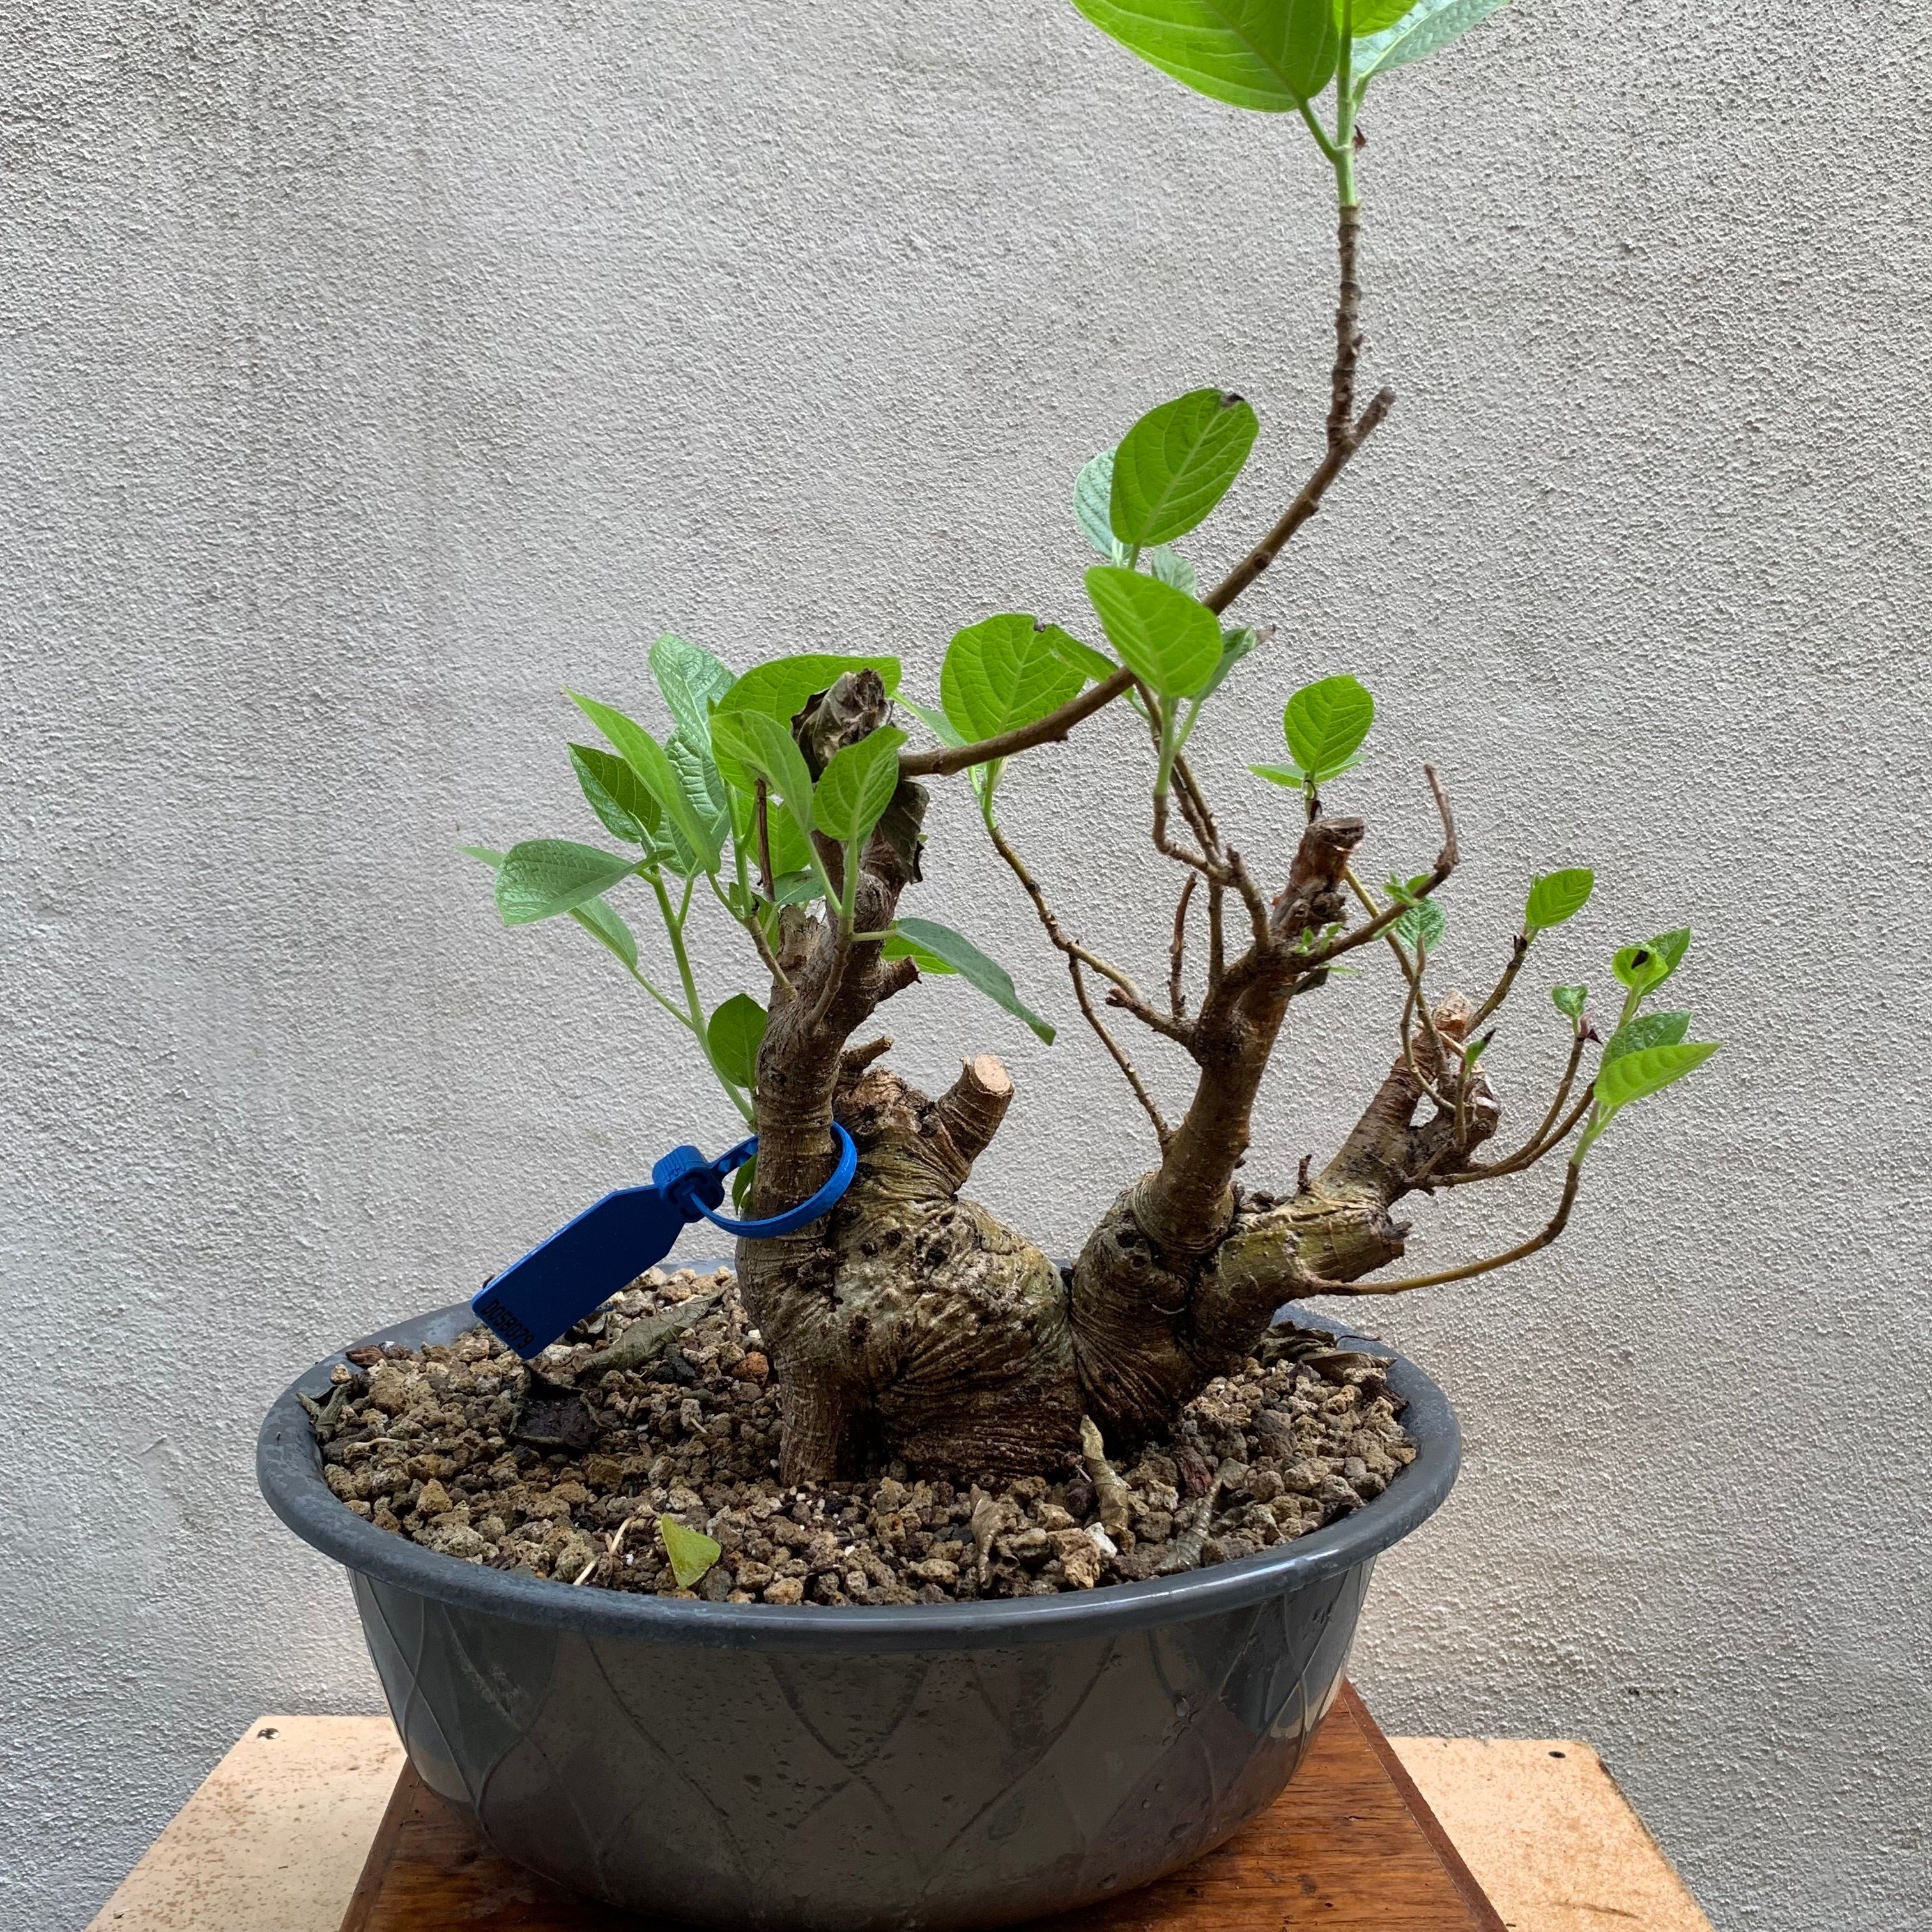 Pre-bonsai Amate ( Ficus Insipida)